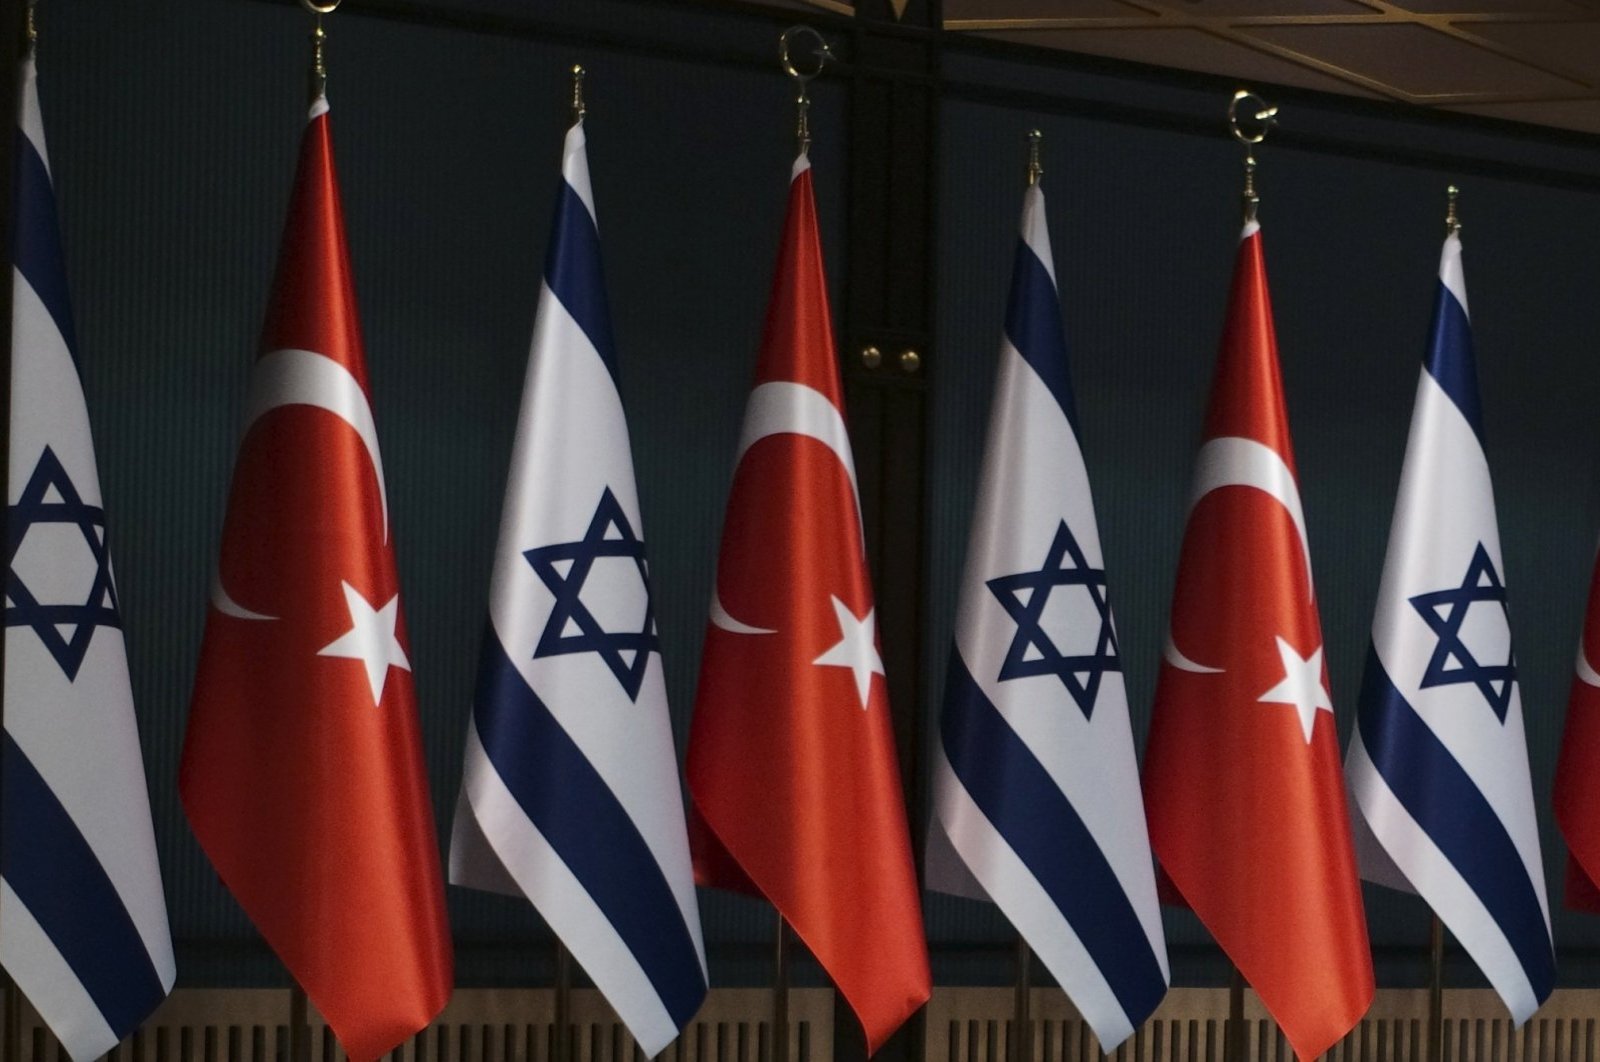 Türkiye appoints Şakir Özkan Torunlar as ambassador to Israel